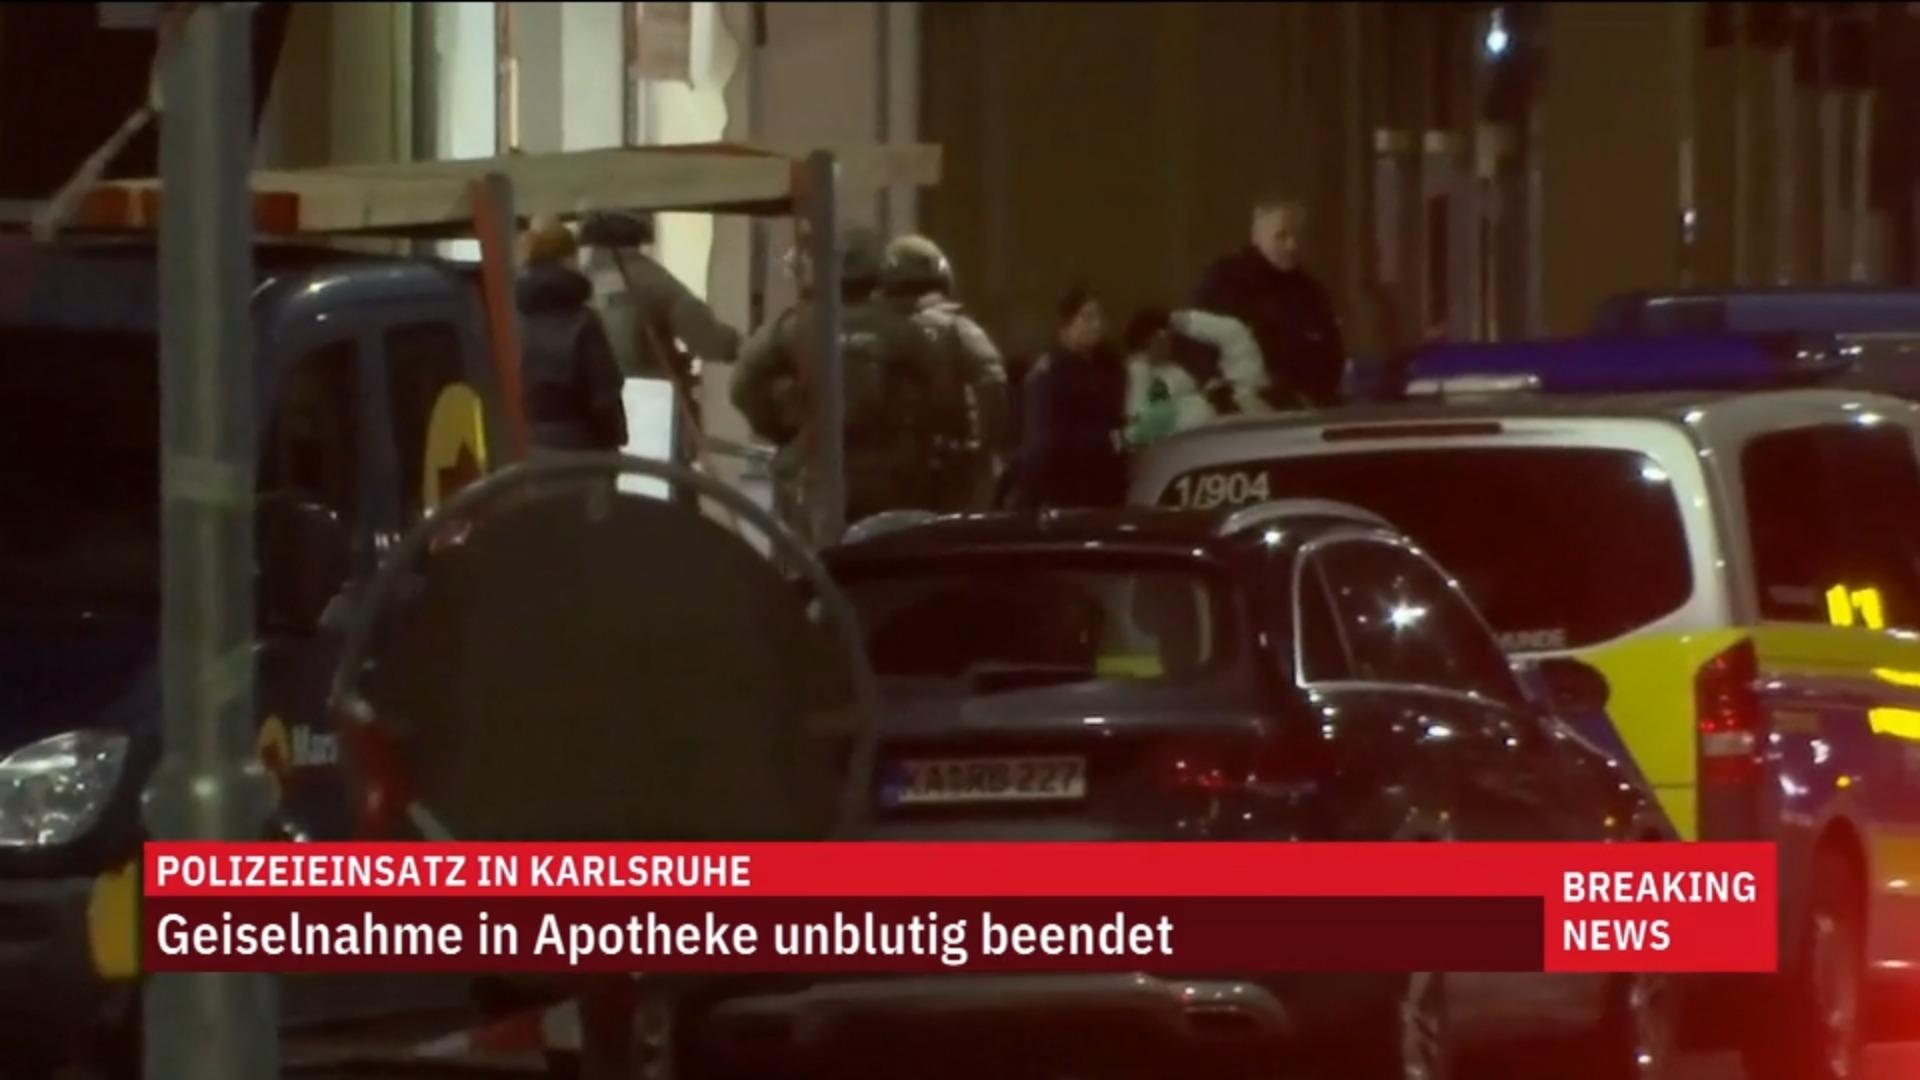 Polizei stürmt Apotheke in Karlsruhe    - Täter festgenommen Geiselnahme endet unblutig